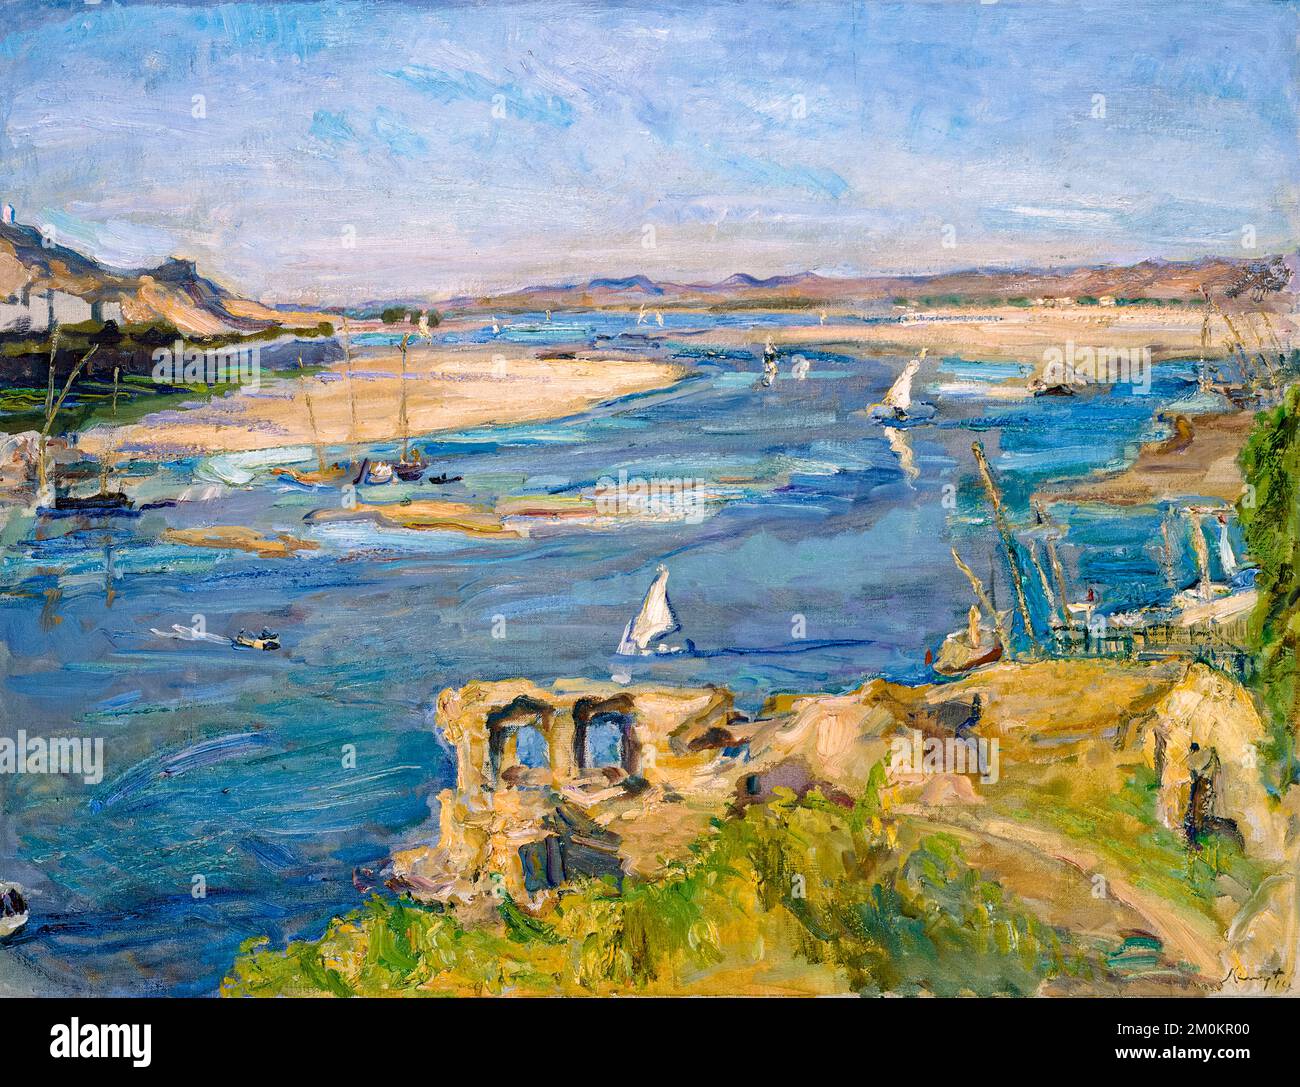 Max Slevogt paysage peinture, le Nil près d'Assouan, huile sur toile, 1914 Banque D'Images